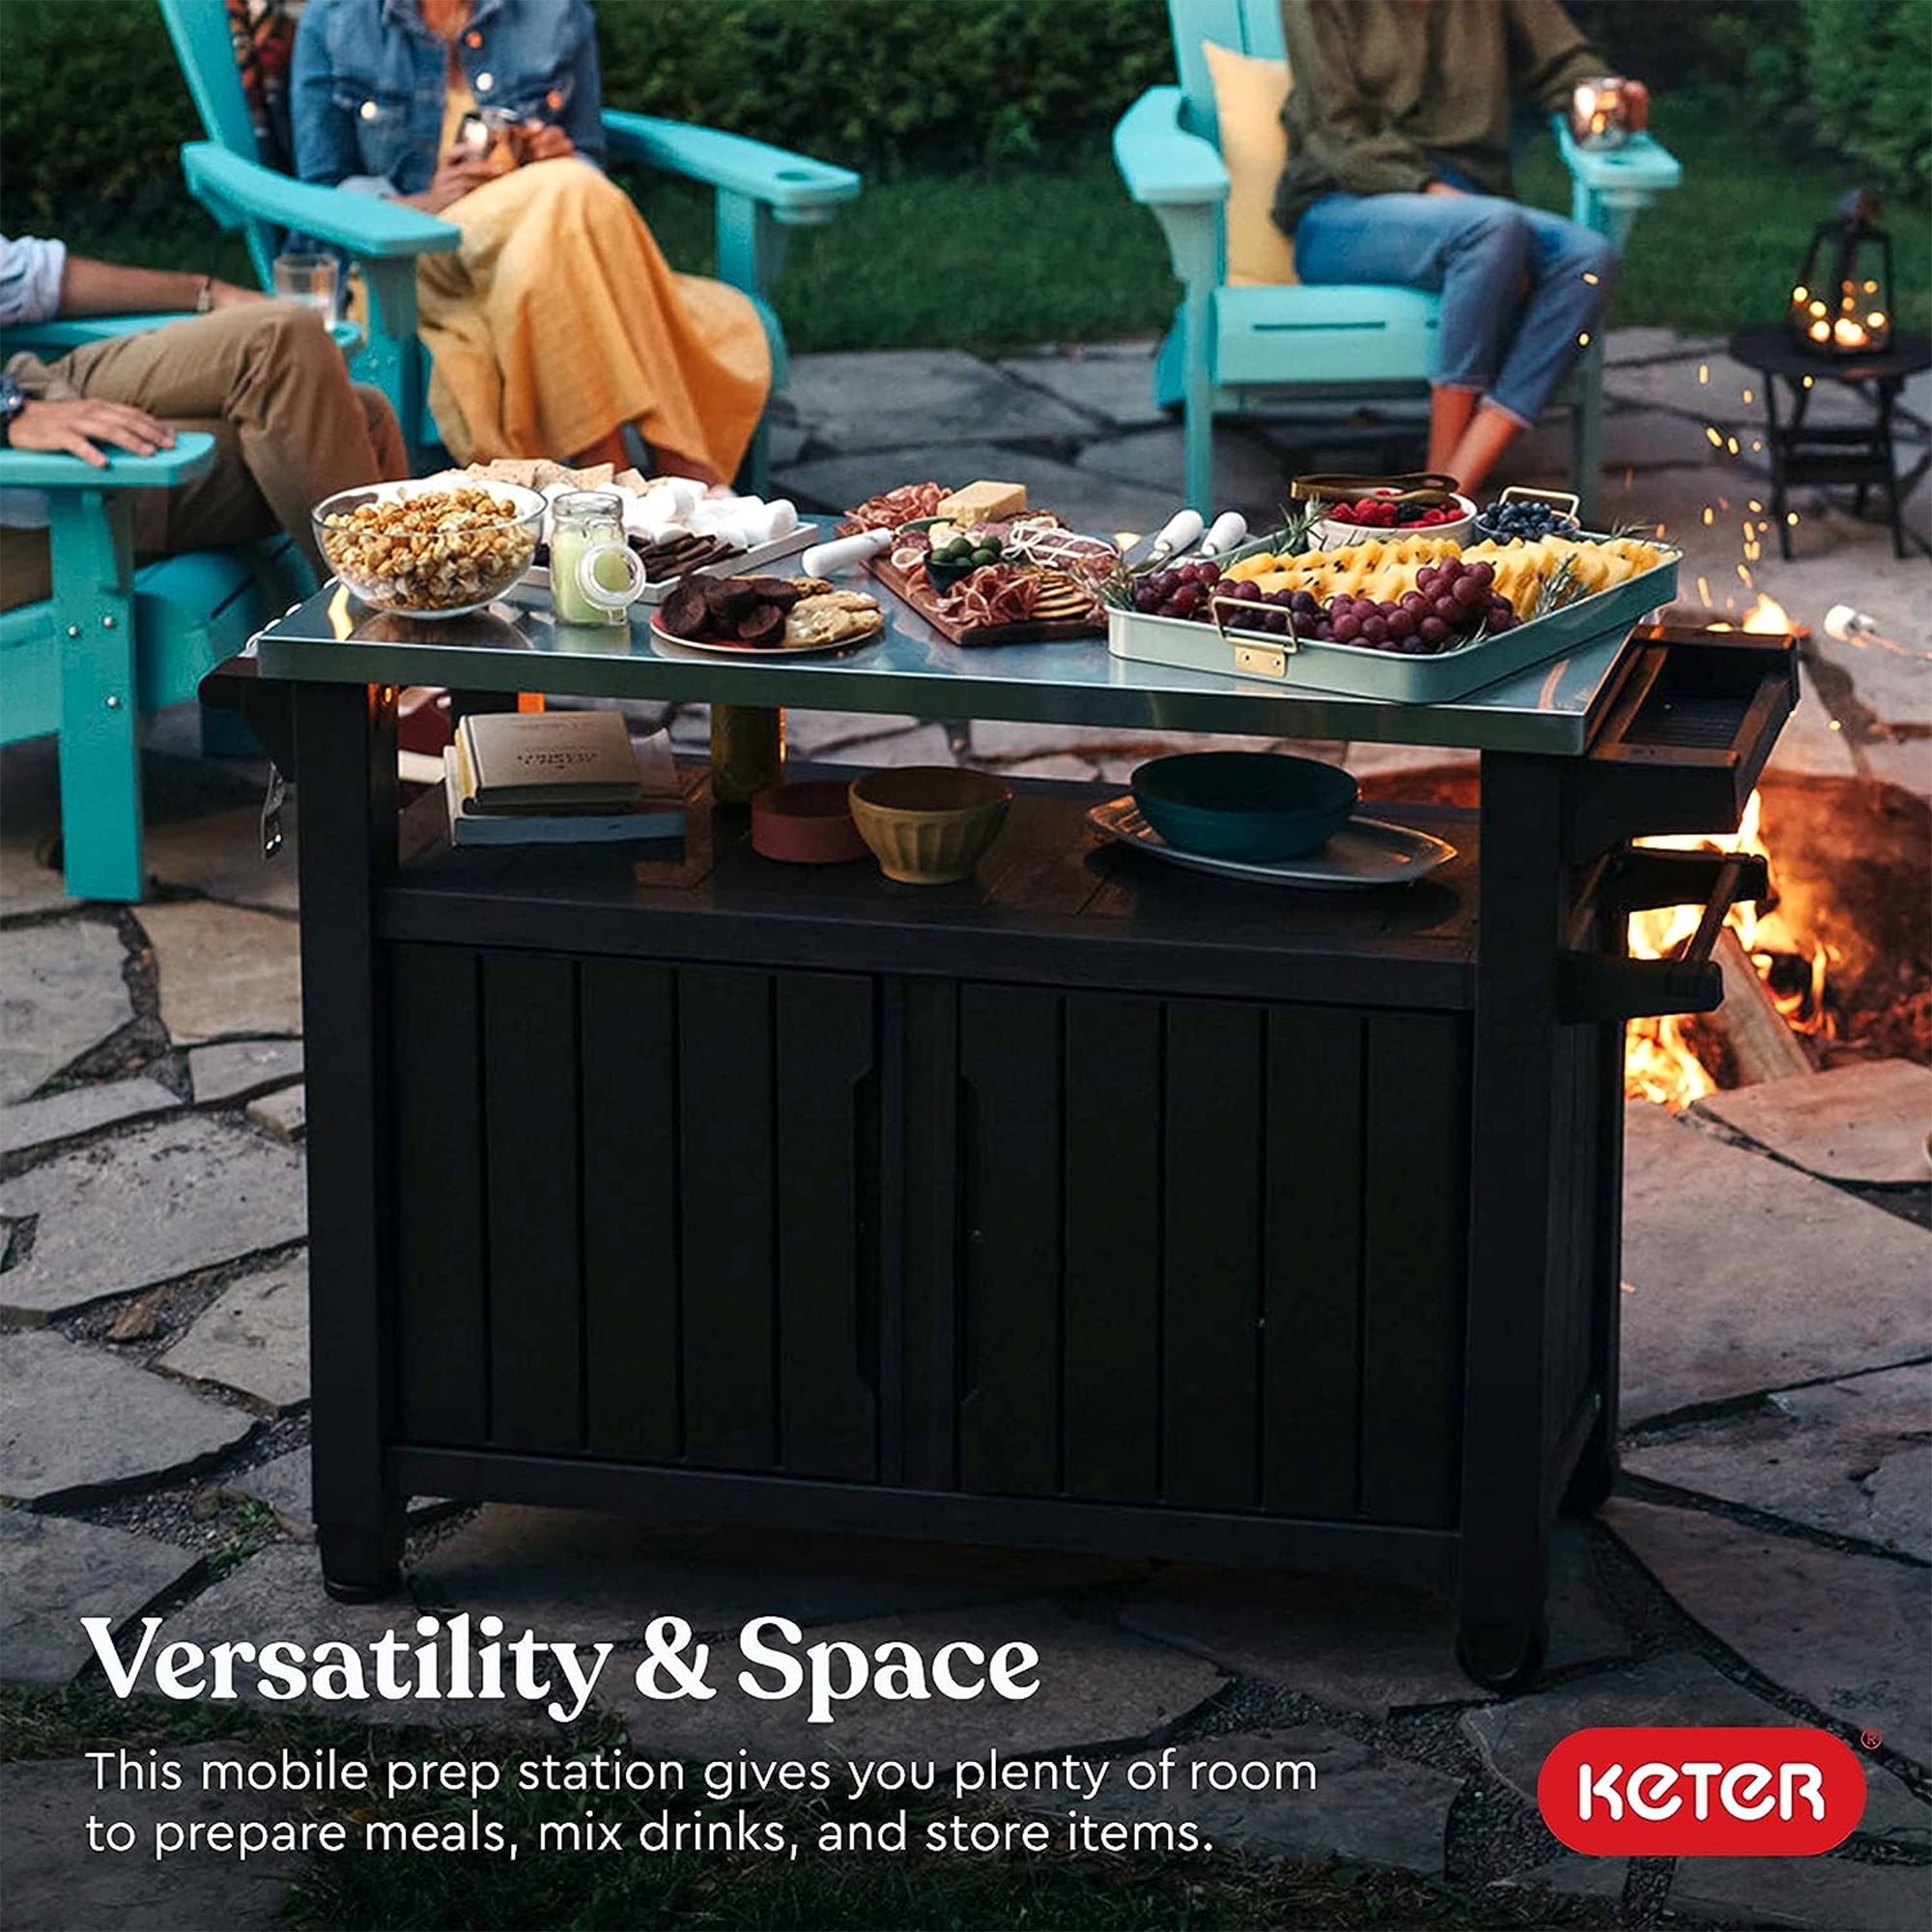 Keter Unity XL Outdoor Kitchen Bar Rolling Cart with Storage Cabinet, Brown | Gartentische